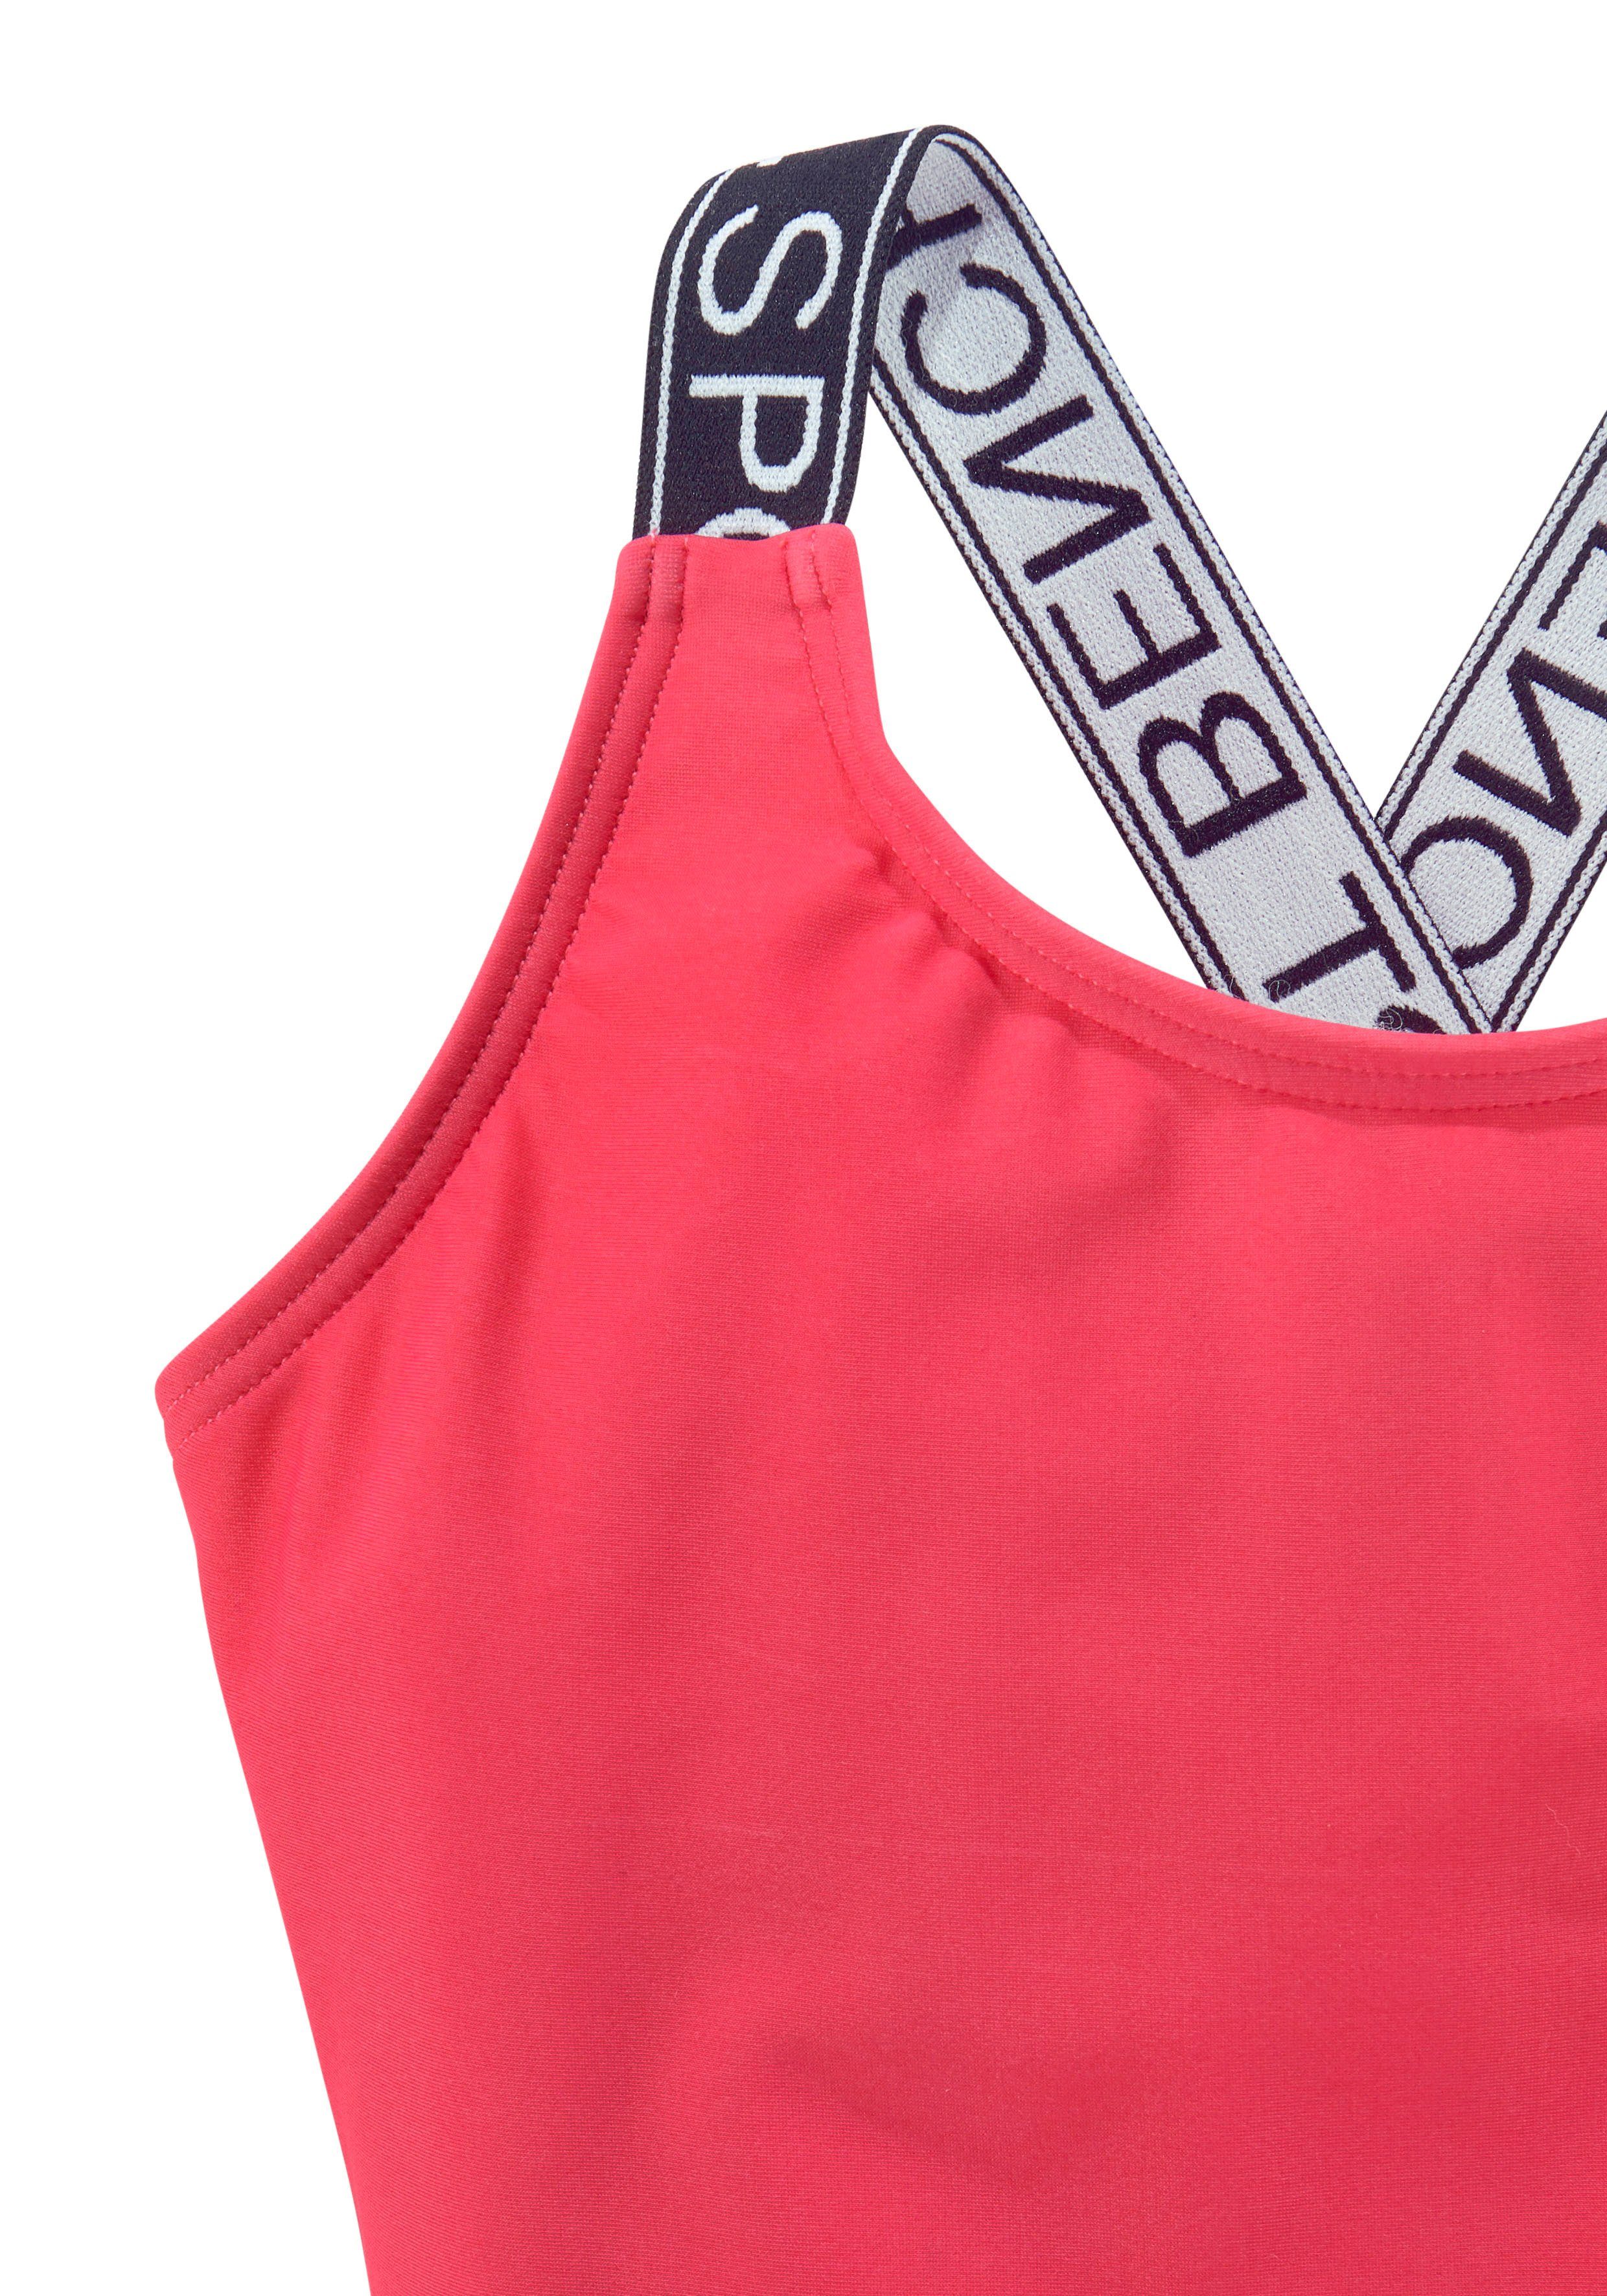 Bench. Badeanzug Yva Design in und Farben pink sportlichem Kids